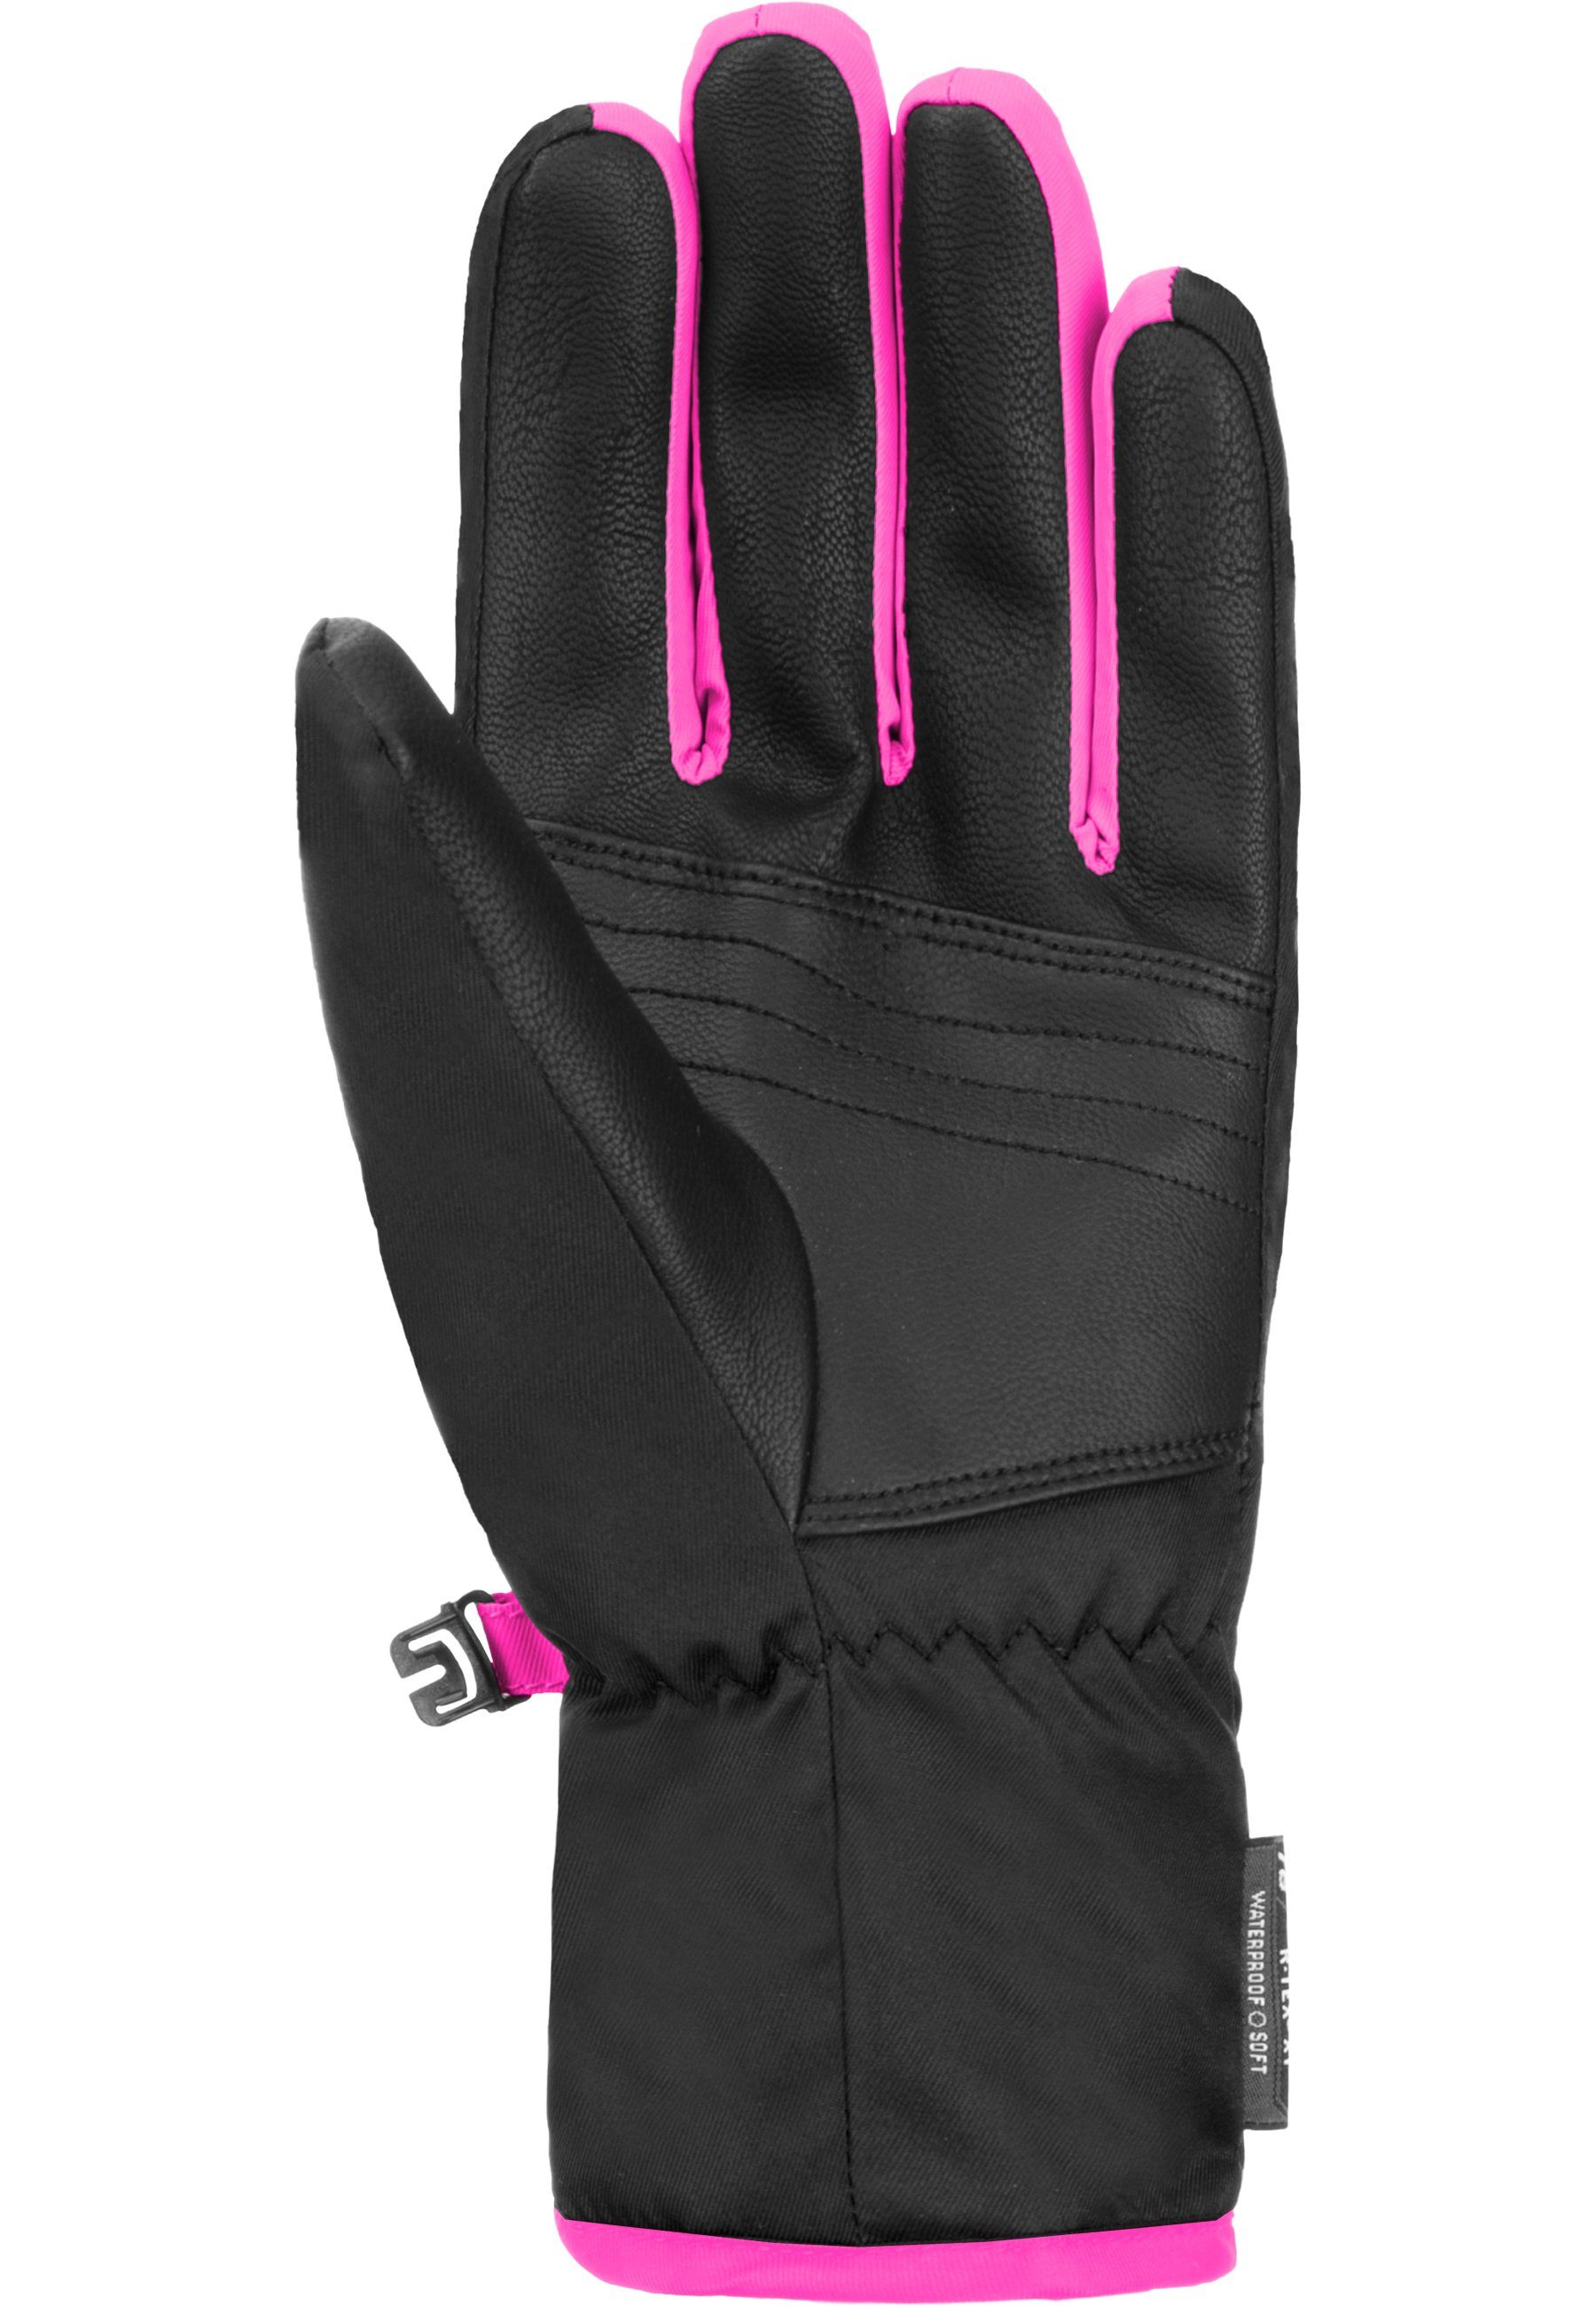 Skihandschuhe Junior pink-schwarz Design in XT Duke R-TEX sportlichem Reusch